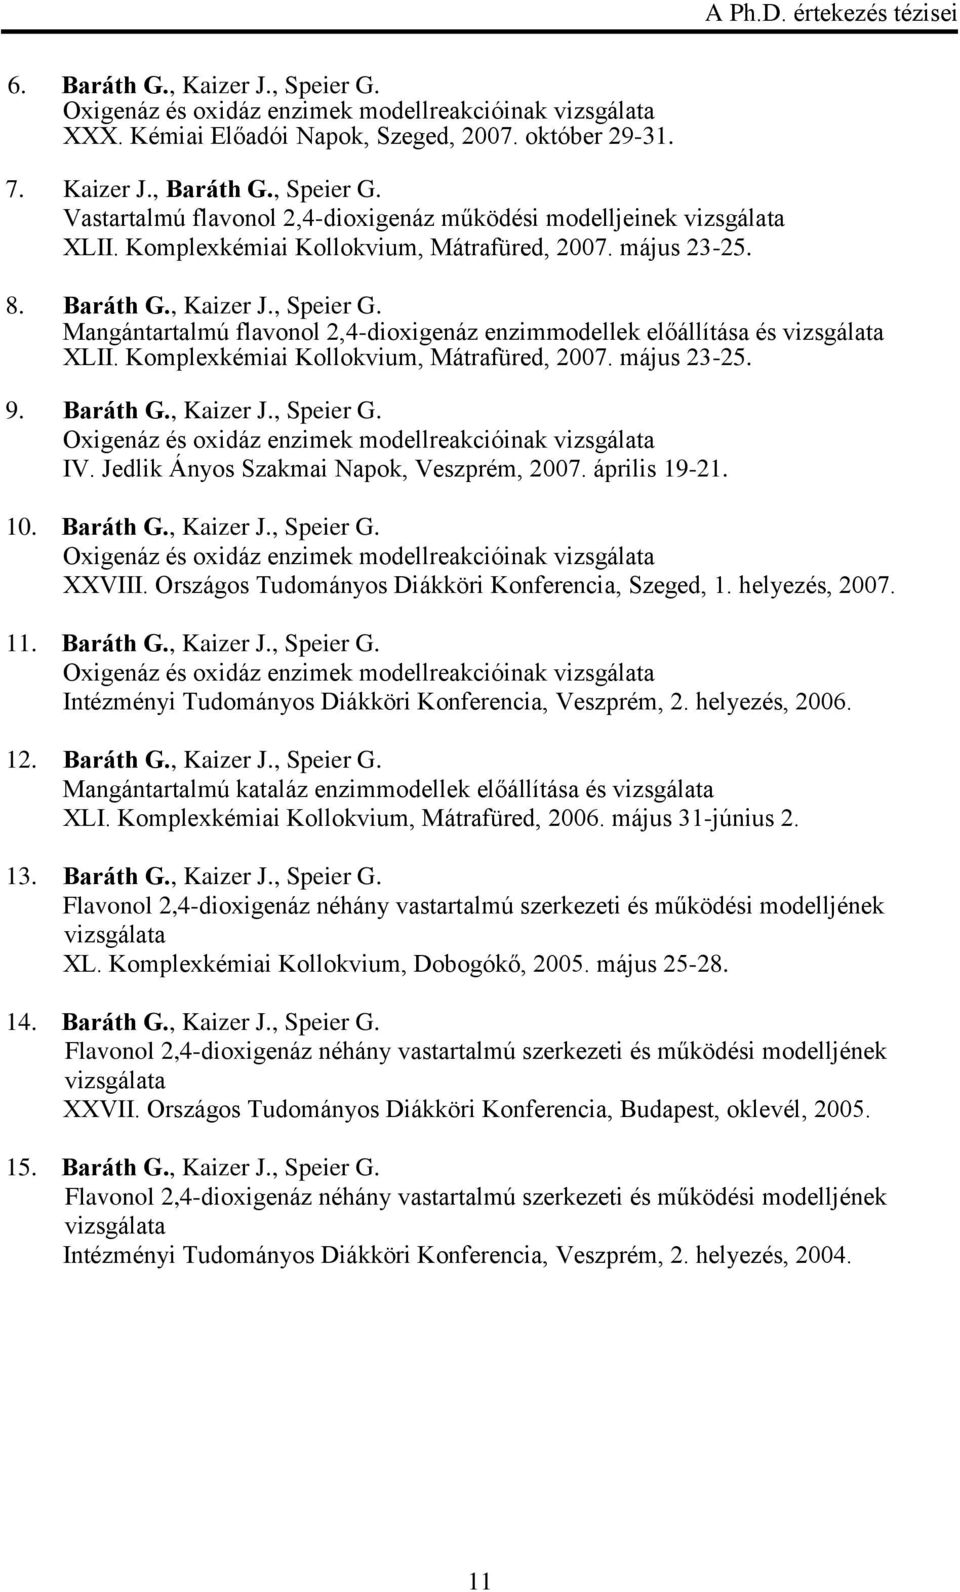 Komplexkémiai Kollokvium, Mátrafüred, 2007. május 23-25. 9. Baráth G., Kaizer J., Speier G. Oxigenáz és oxidáz enzimek modellreakcióinak vizsgálata IV. Jedlik Ányos Szakmai Napok, Veszprém, 2007.